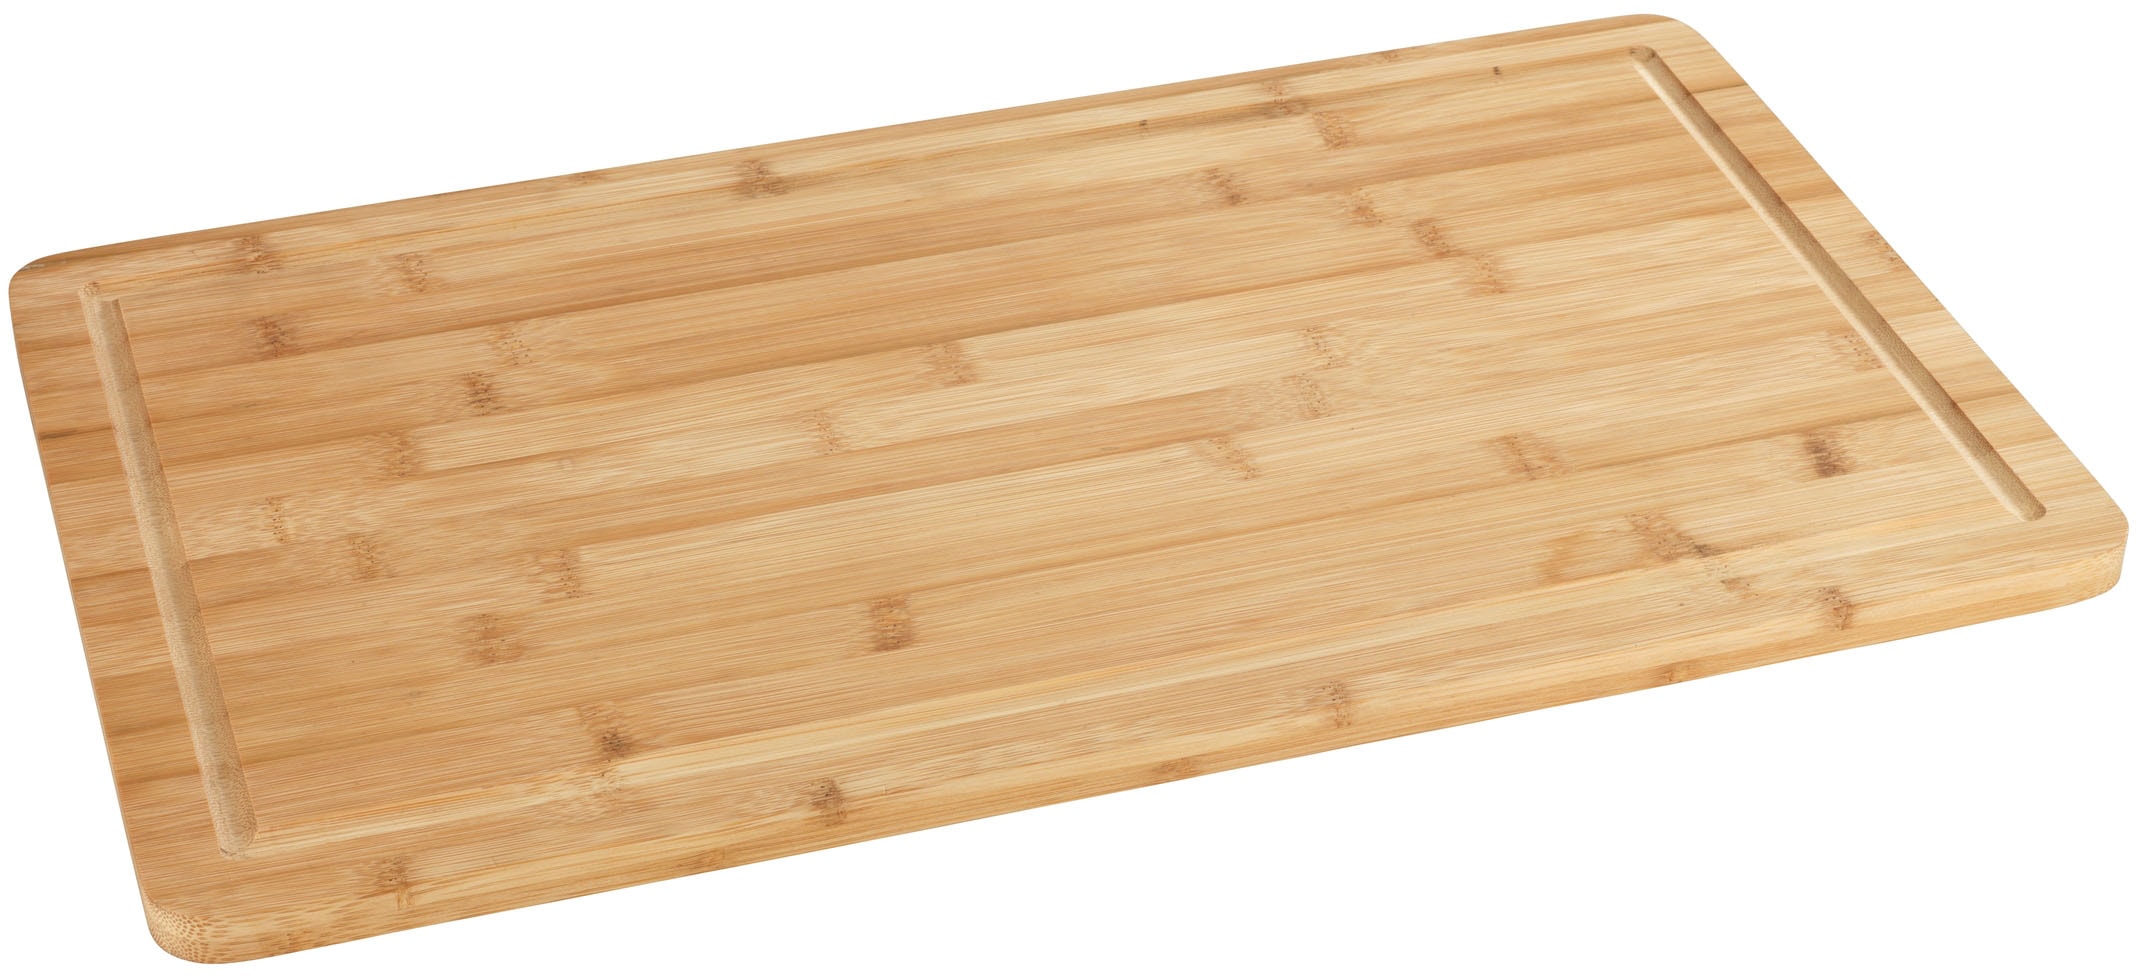 WENKO Herdabdeckplatte Bambus - Küchenbrett, Schneidebrett mit Saftrille, Bambus, 52 x 1.5 x 30 cm, Braun